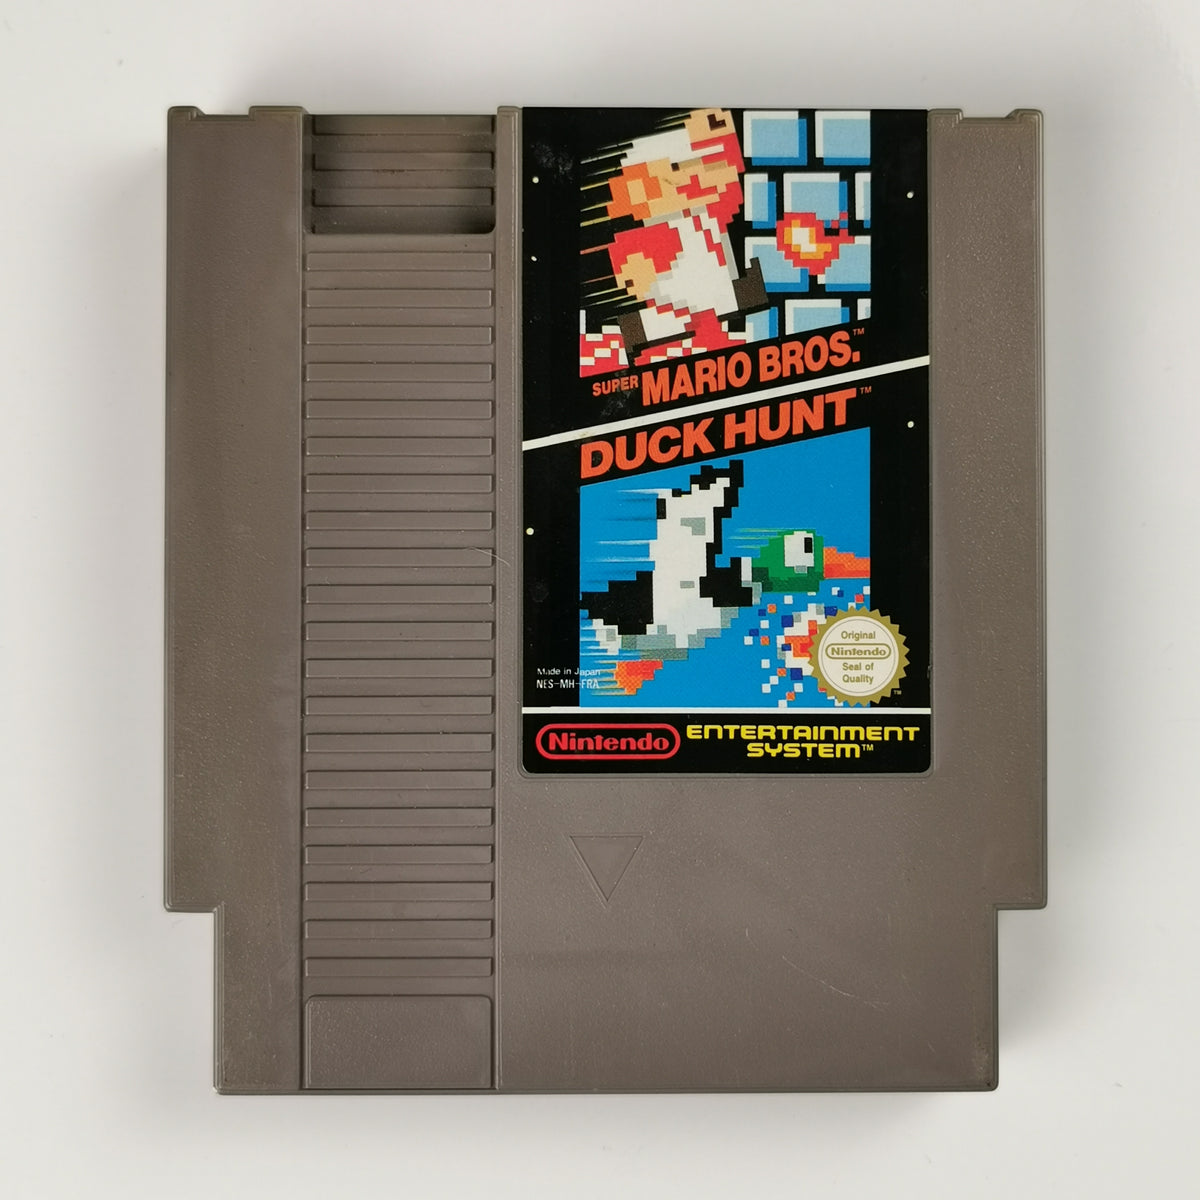 Super Mario Bros. / Duck Hunt NES (Nintendo) [Akzeptabel]